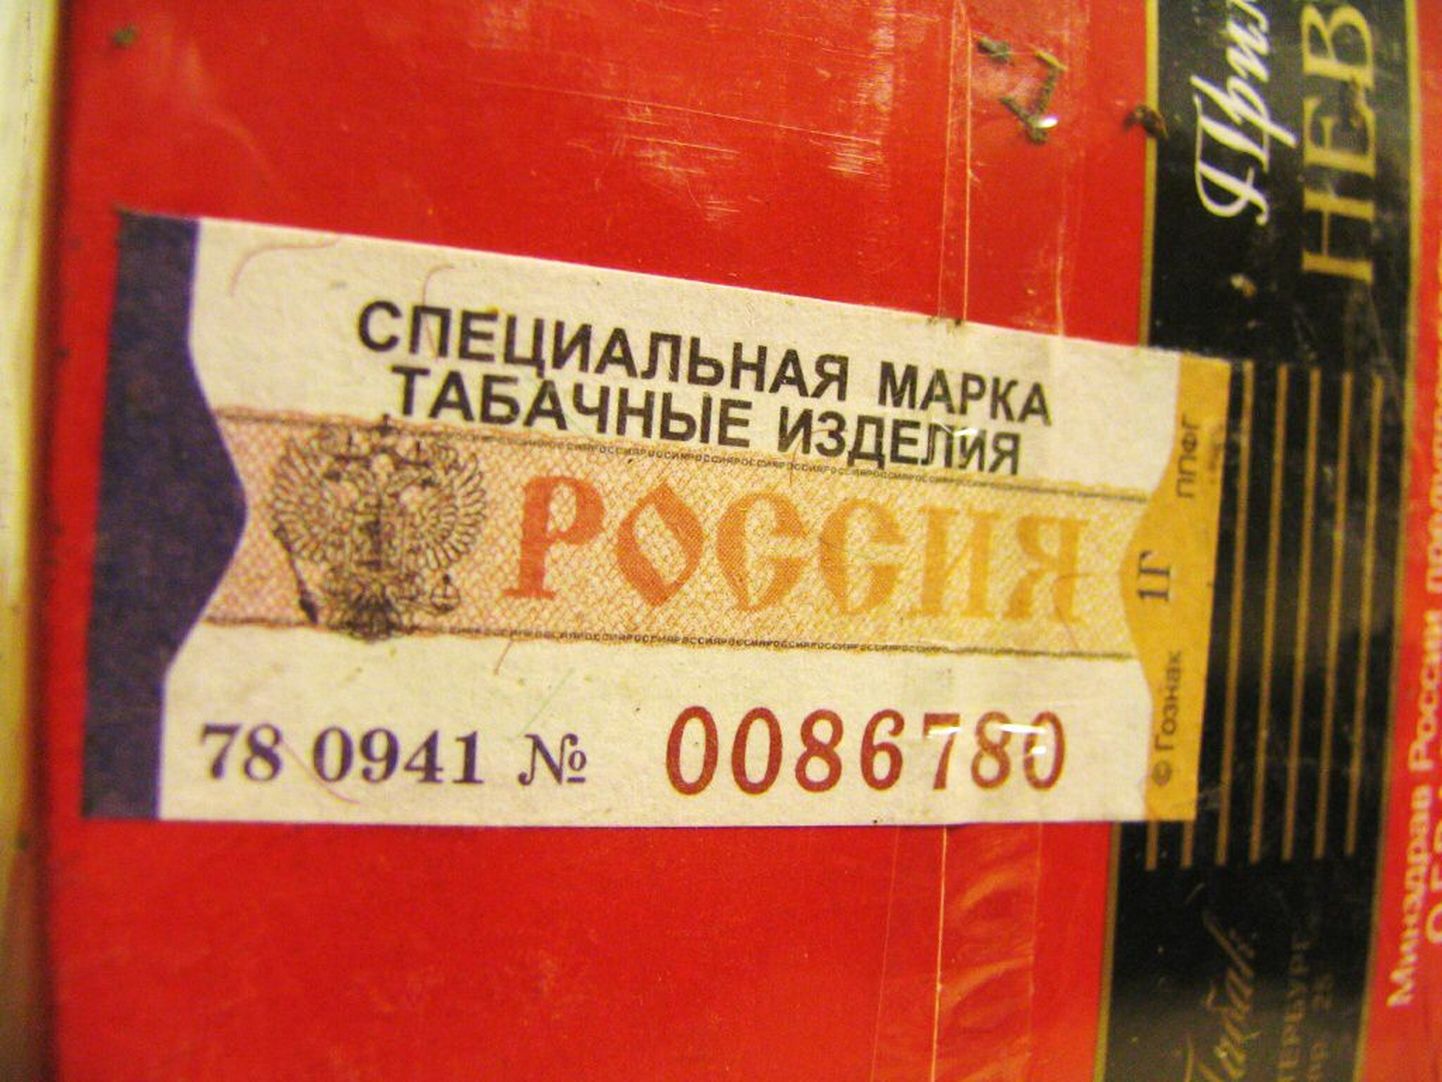 Tolli poolt konfiskeeritud Vene maksumärkidega suitsud Primo Nevo..